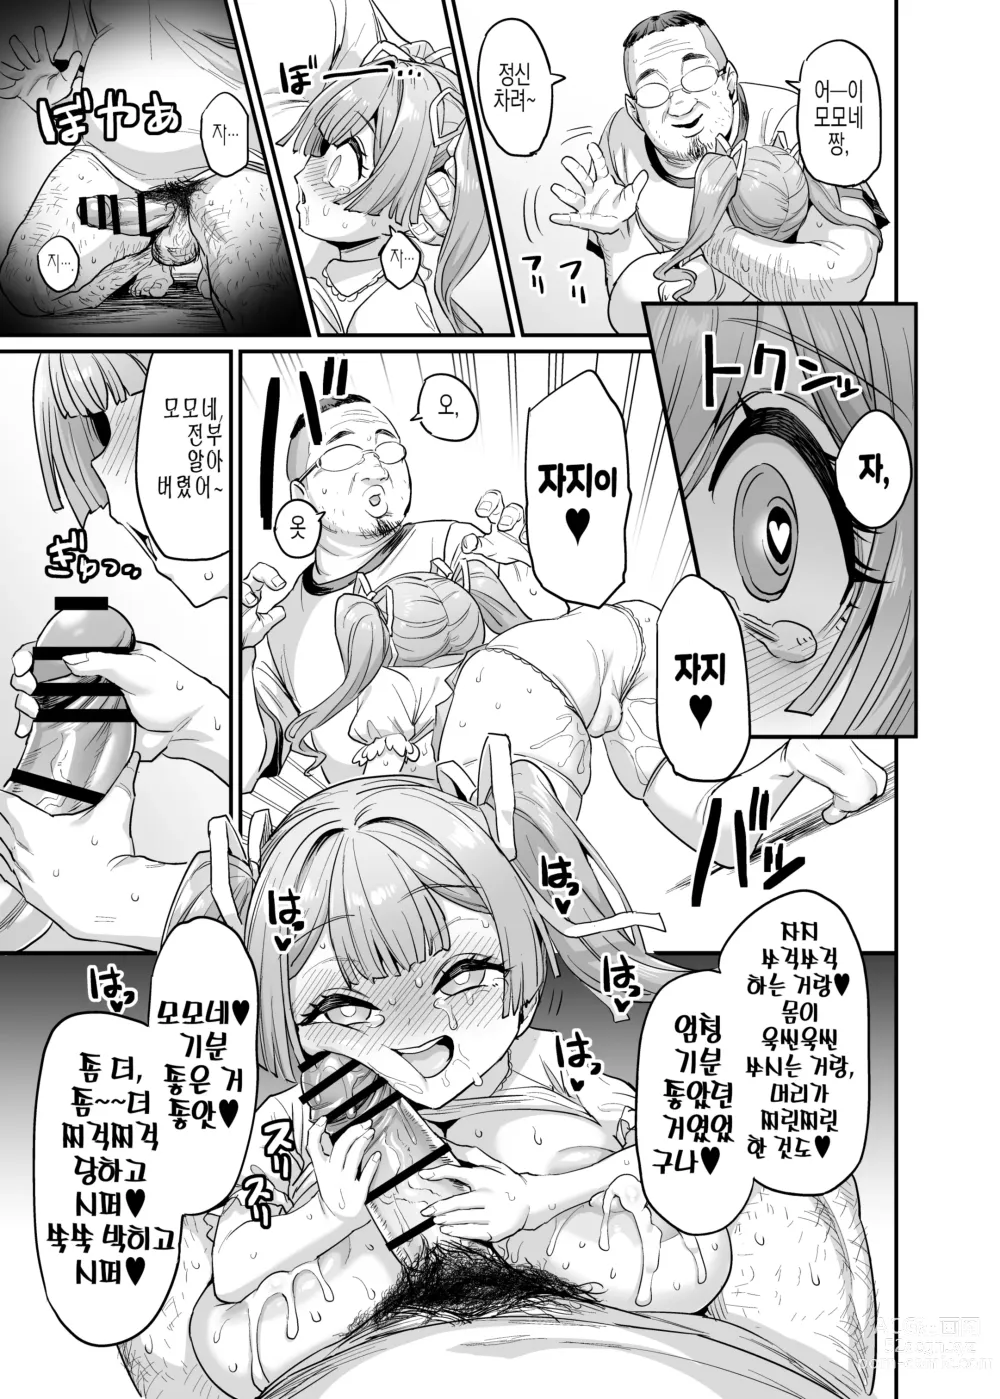 Page 37 of doujinshi 젖통 삽입 가족#2 모모네 애육